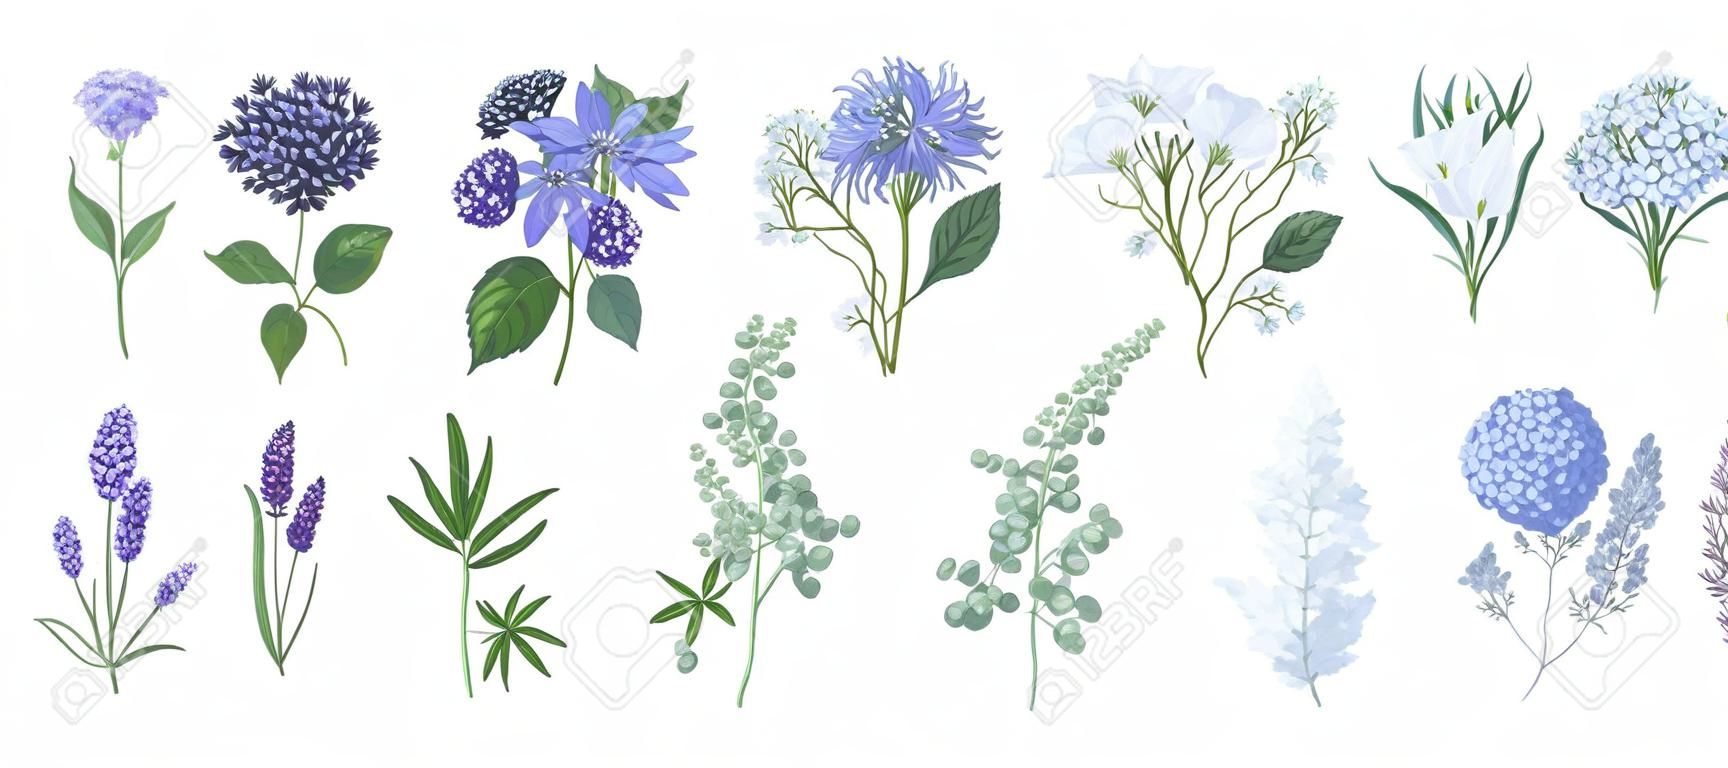 Ensemble de dessins détaillés de belles fleurs florales et d'herbes décoratives isolés sur fond blanc. Ensemble de belles décorations florales et à base de plantes. Illustration vectorielle botanique dessinés à la main.